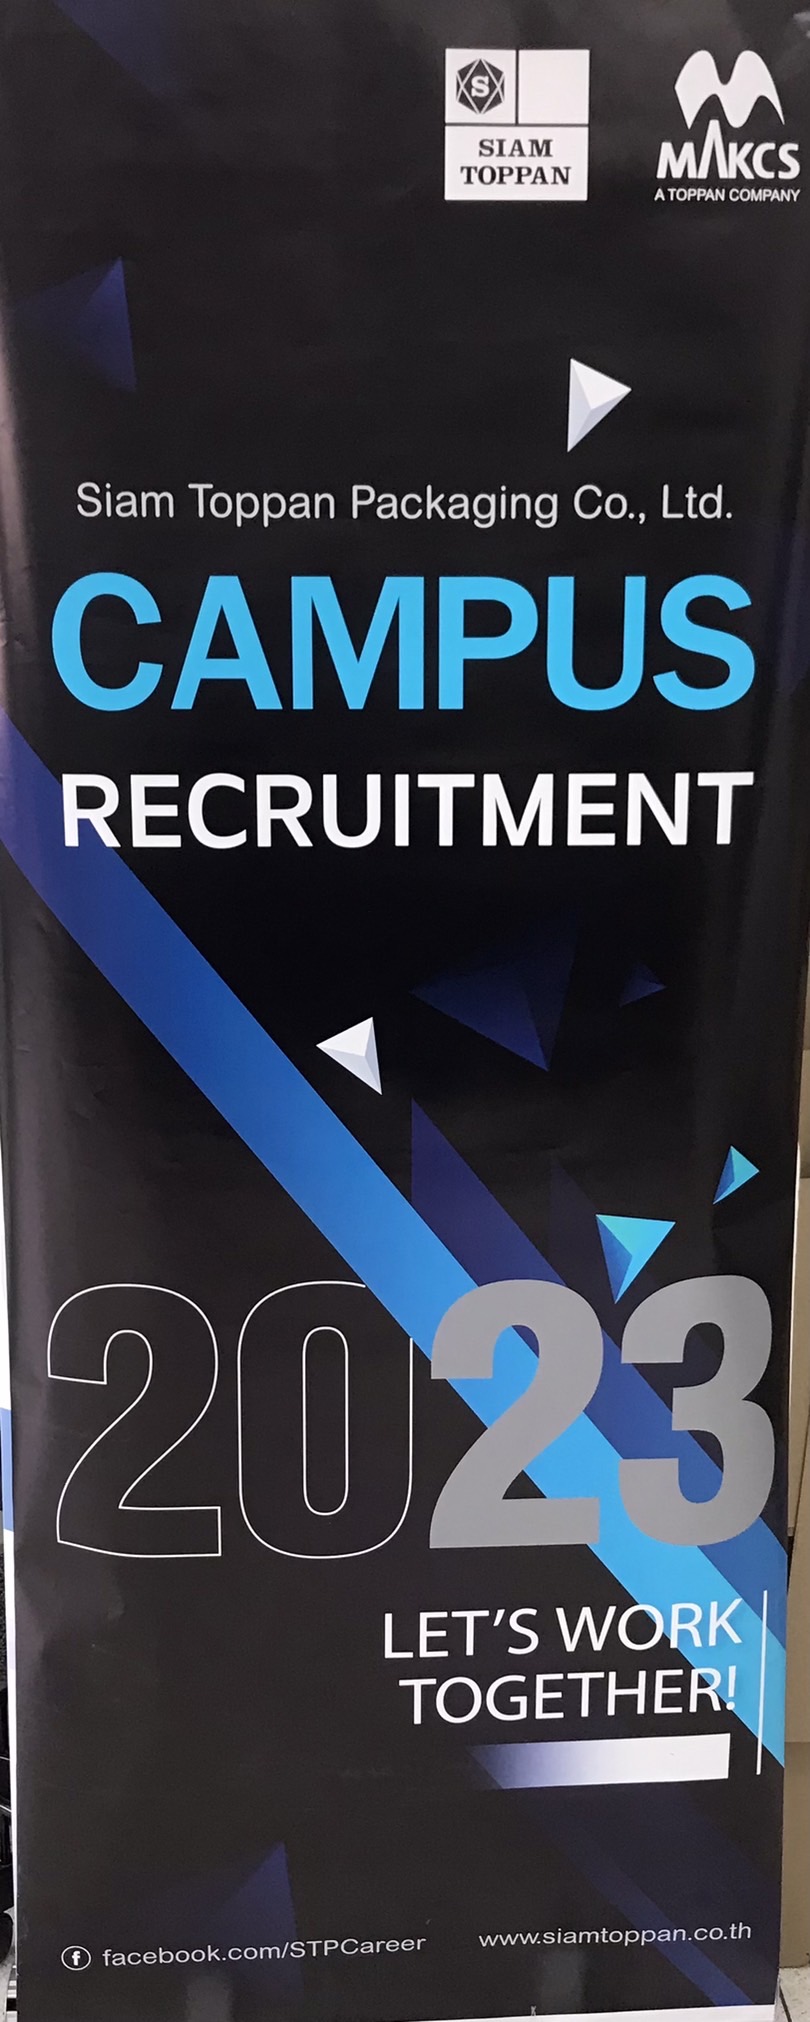 กิจกรรม Campus Recruitment